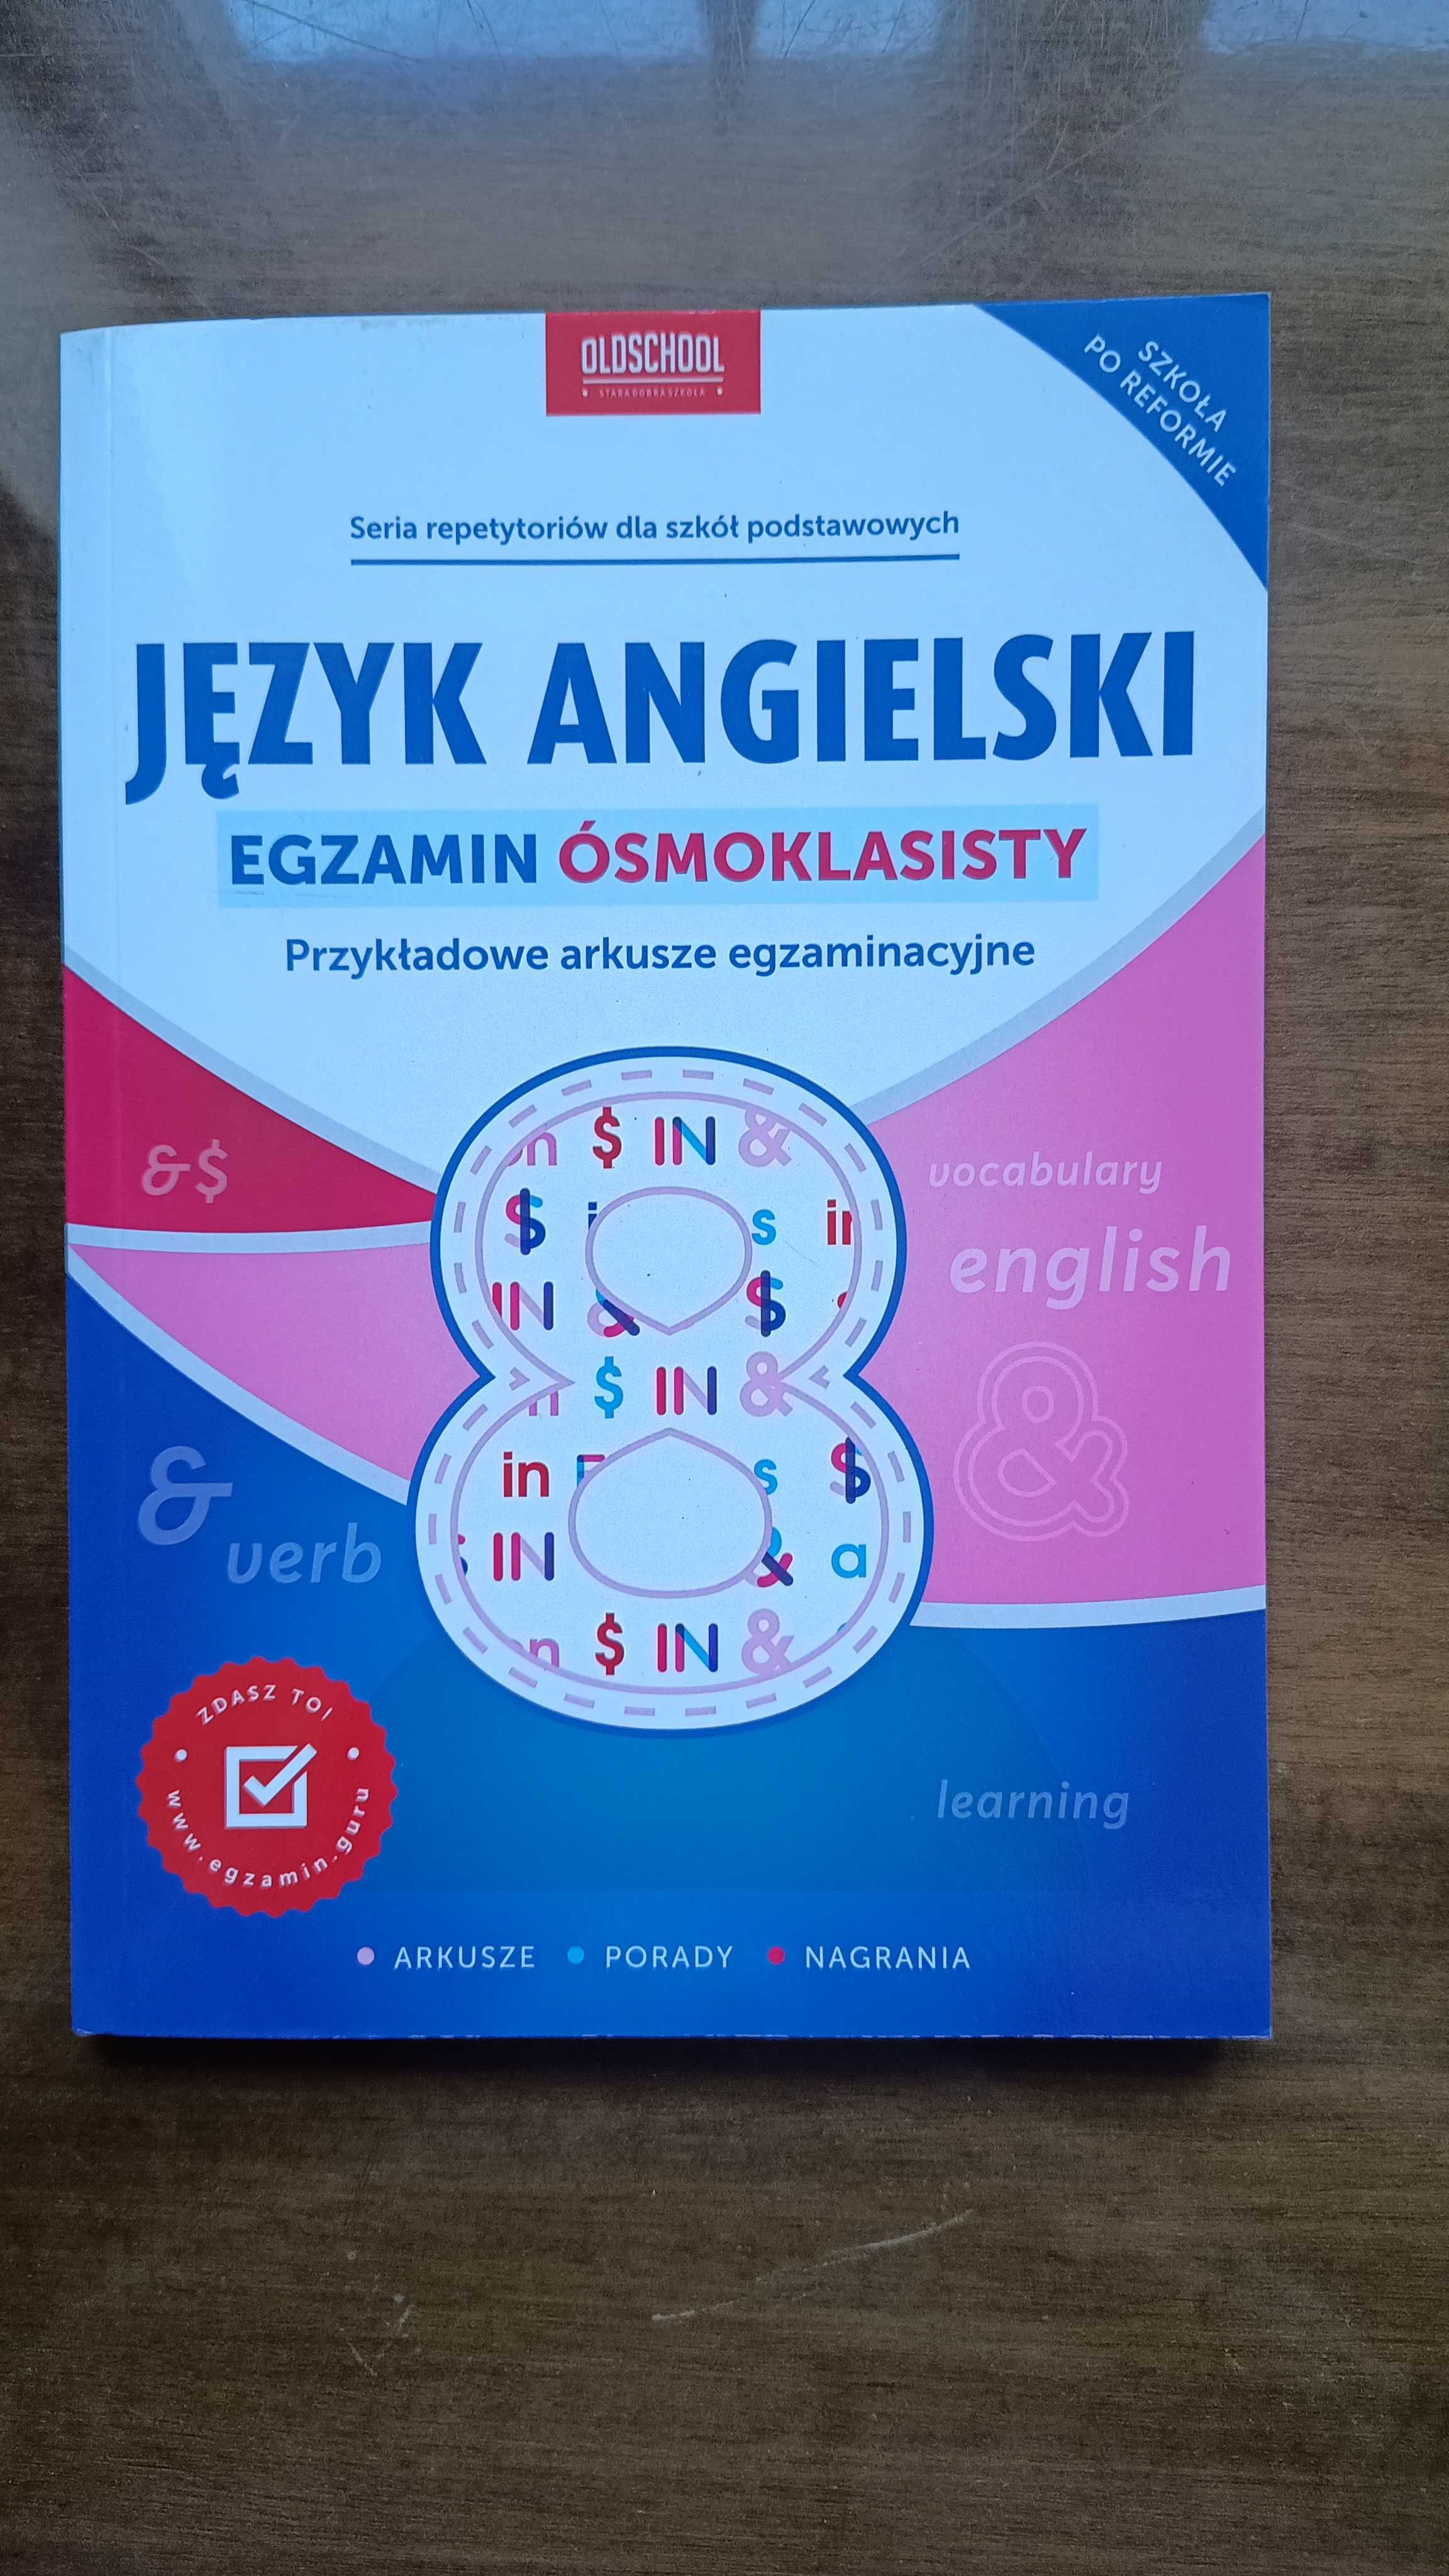 Język angielski - egzamin ósmoklasisty - Wydawnictwo Lingo